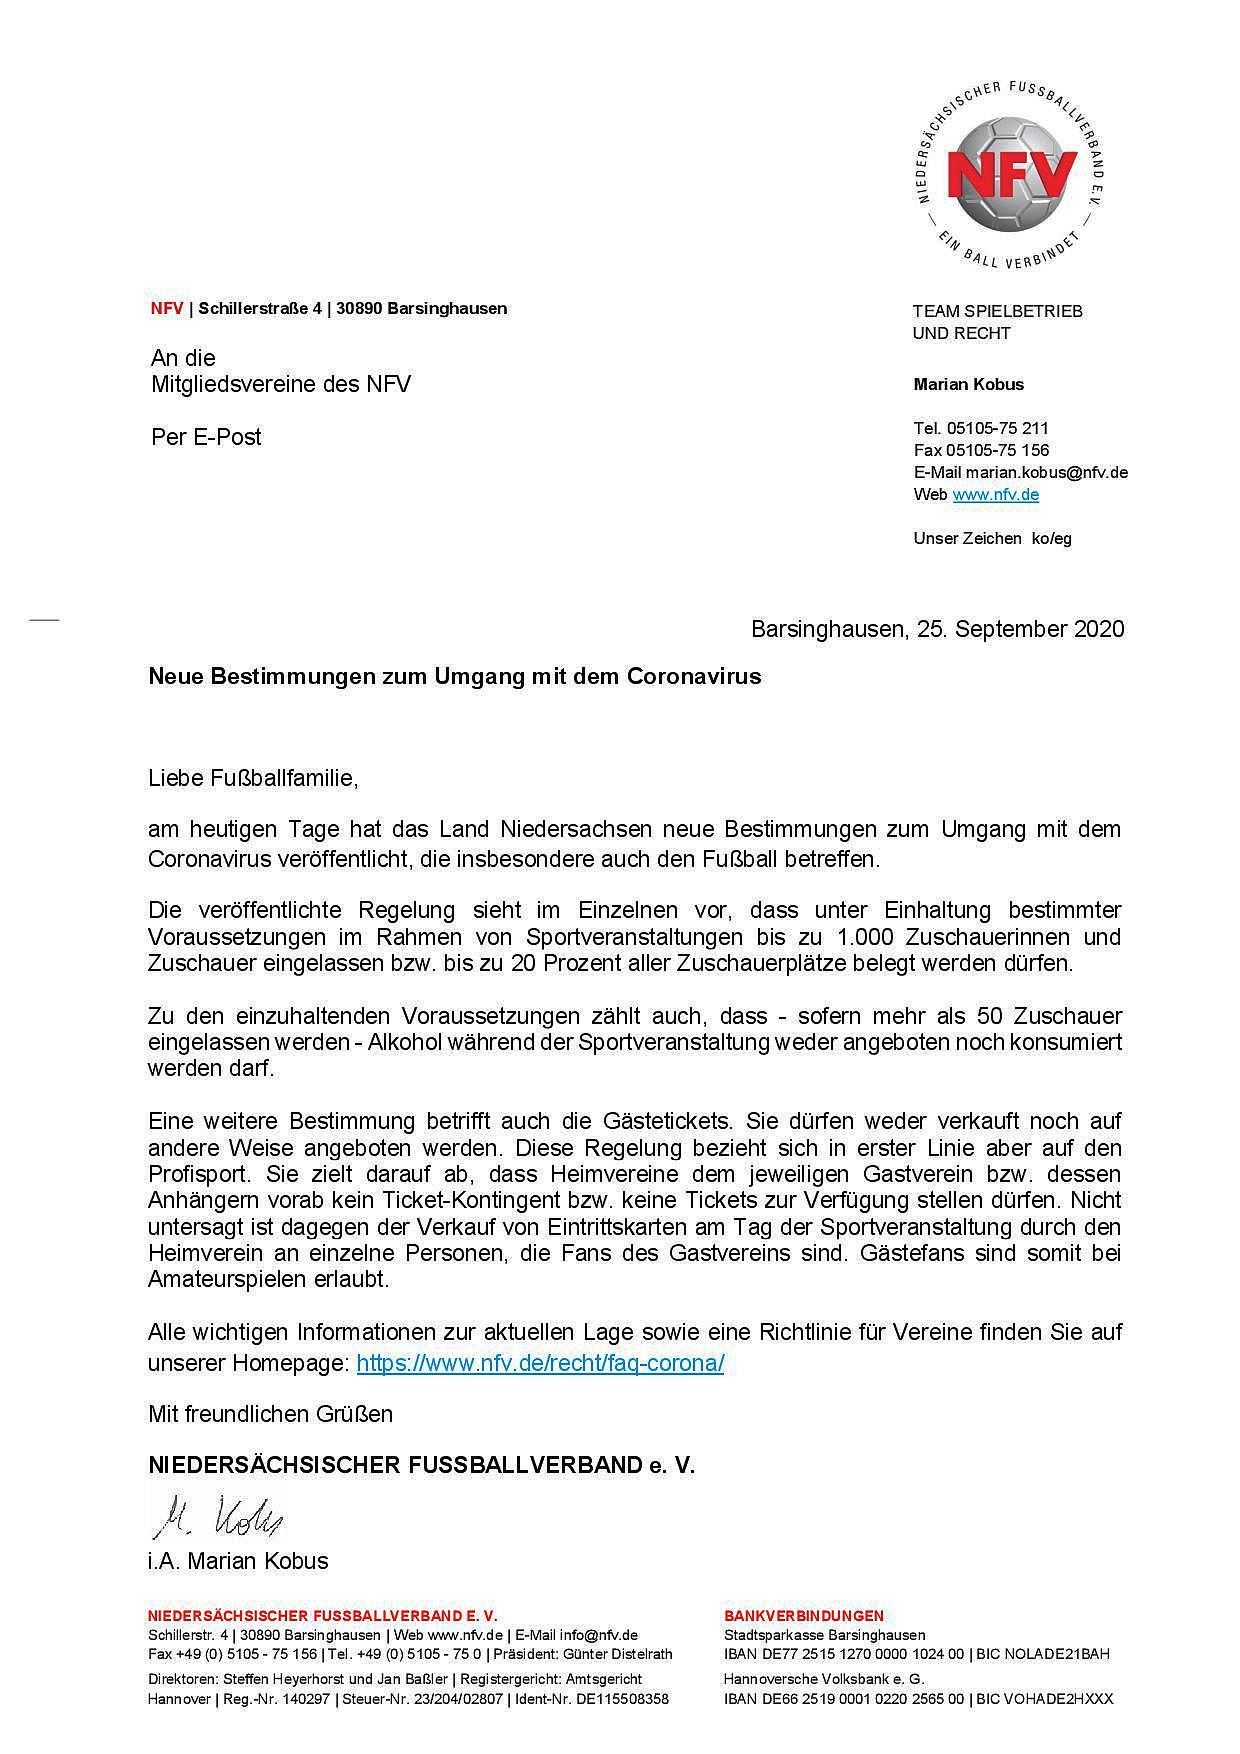 Neue Bestimmungen zum Umgang mit dem Coronavirus   Anschreiben an Vereine   25.09.2020